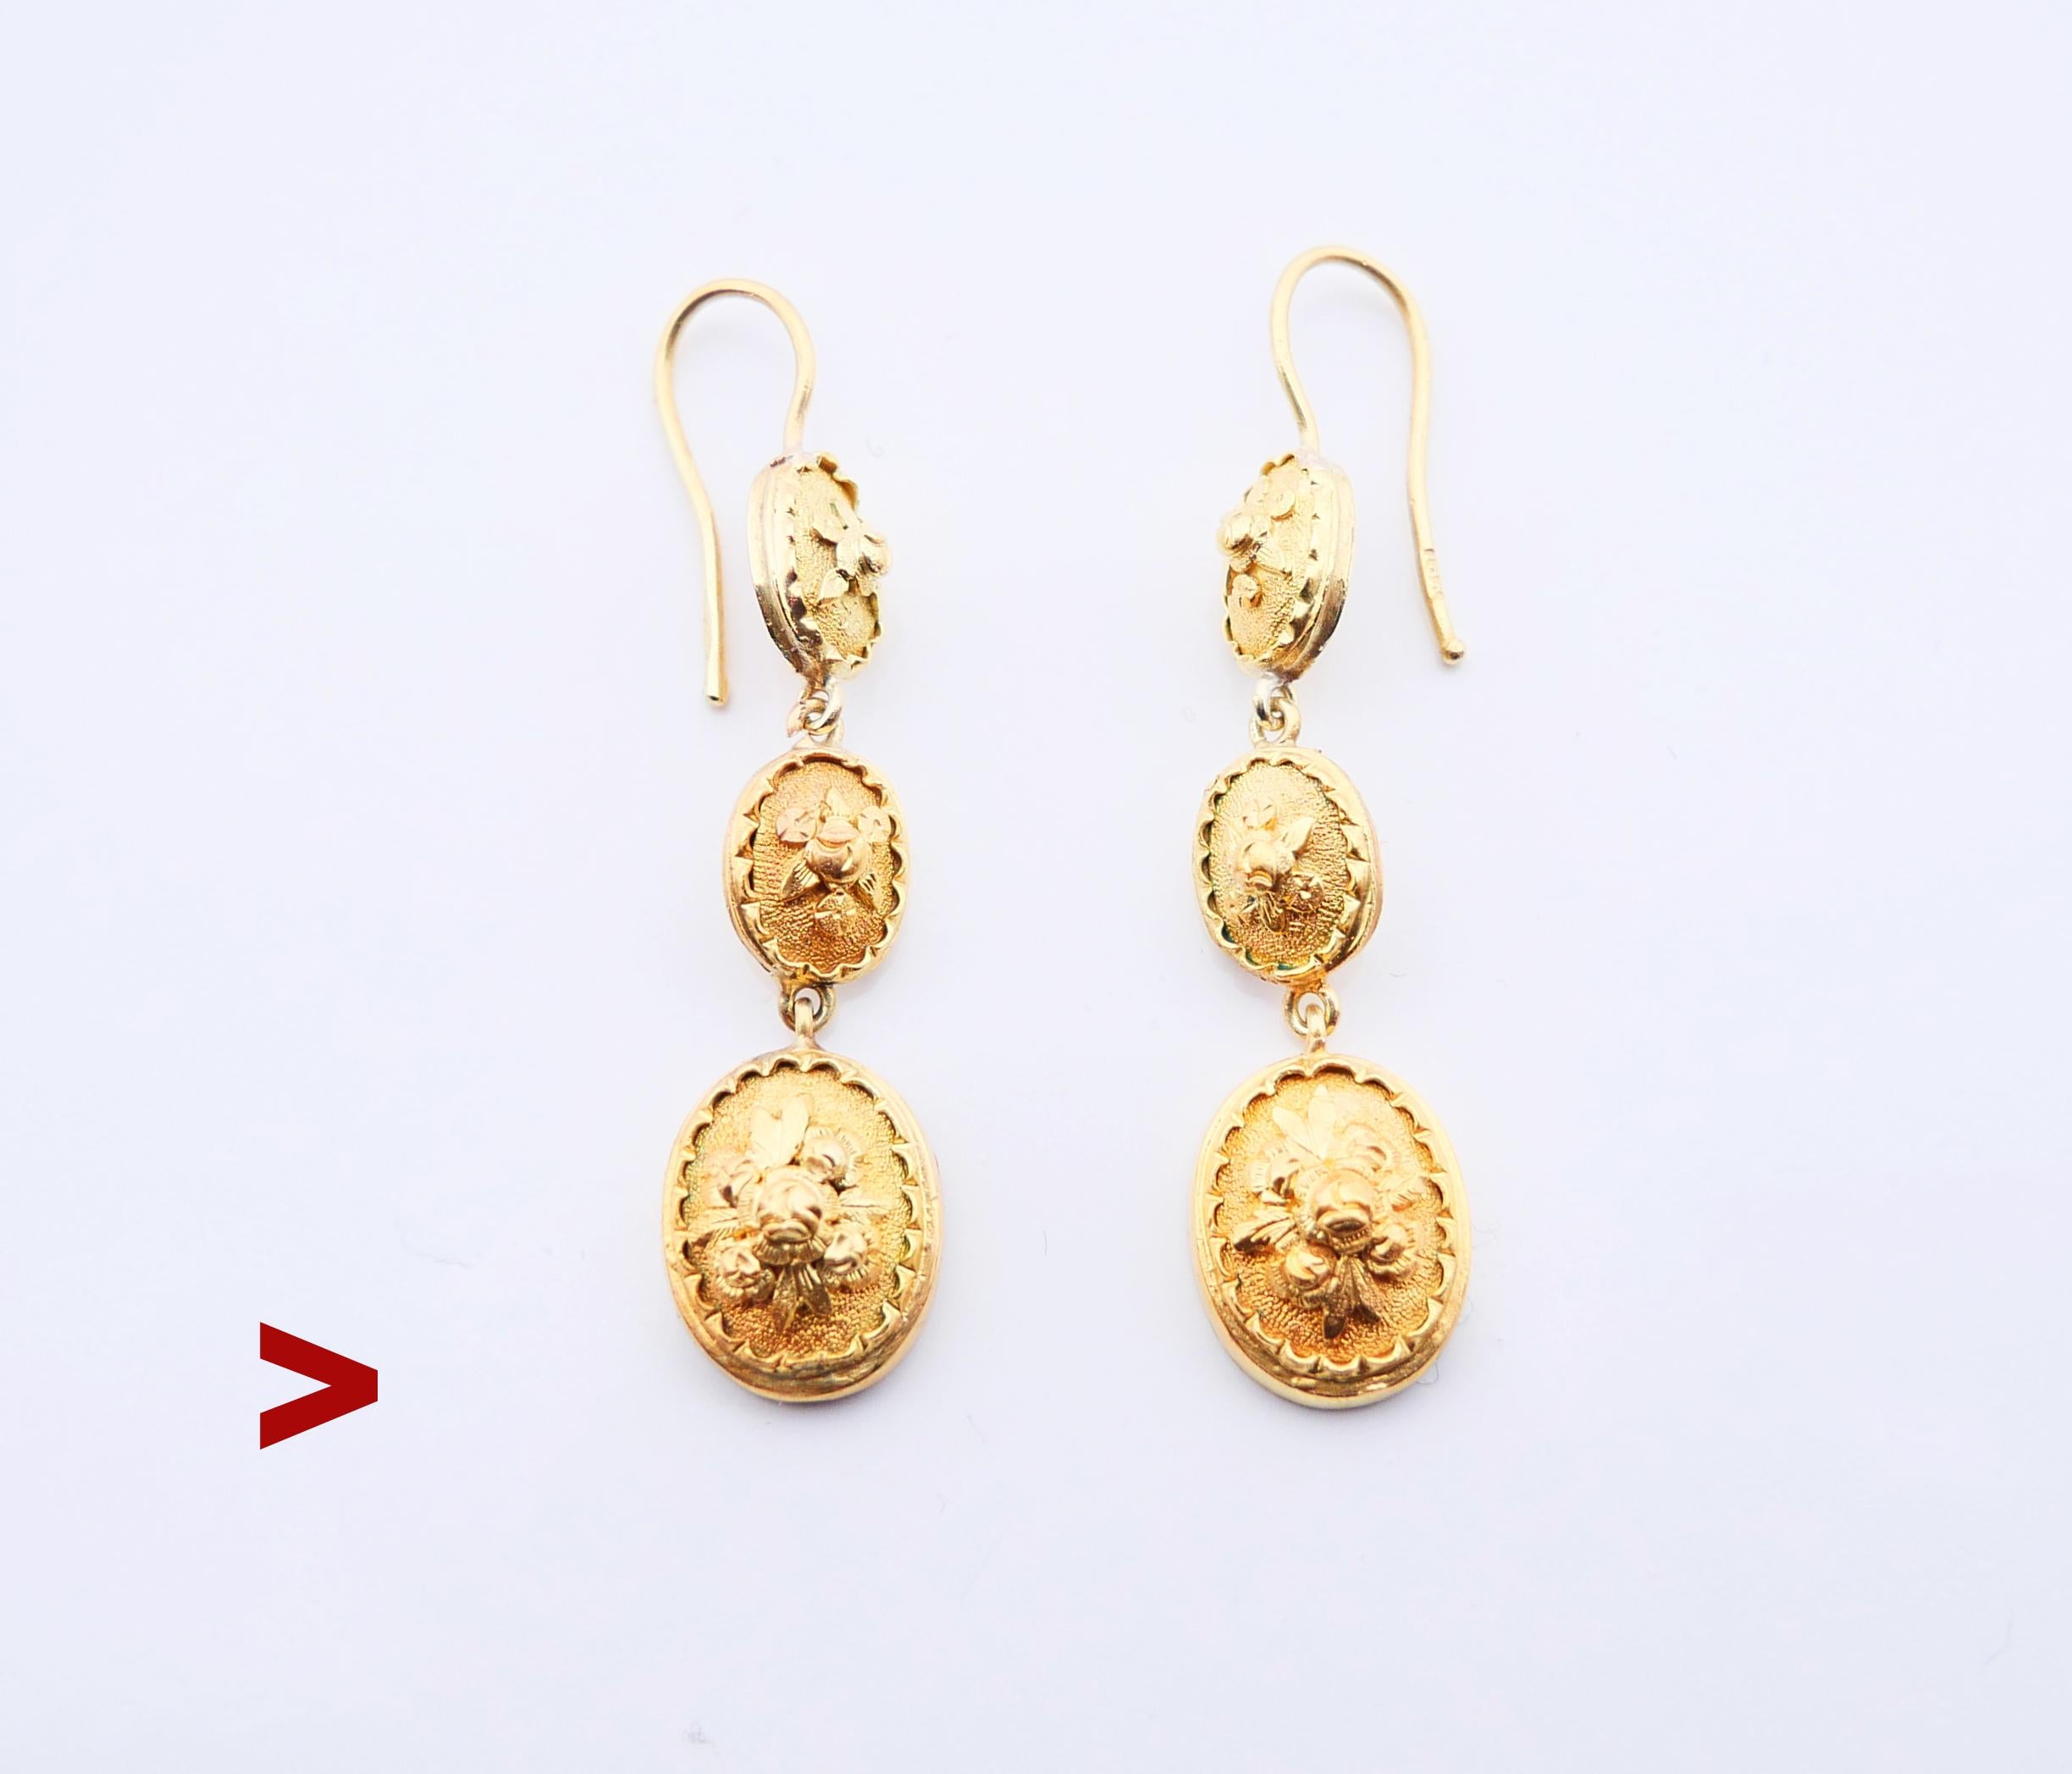 Une paire de boucles d'oreilles anciennes avec des médaillons ovales enchaînés de tailles graduelles, décorés d'ornements floraux moulés.

Fabriqué vers le début des années 1900. Les crochets sont poinçonnés 18K, le métal a été testé en or jaune